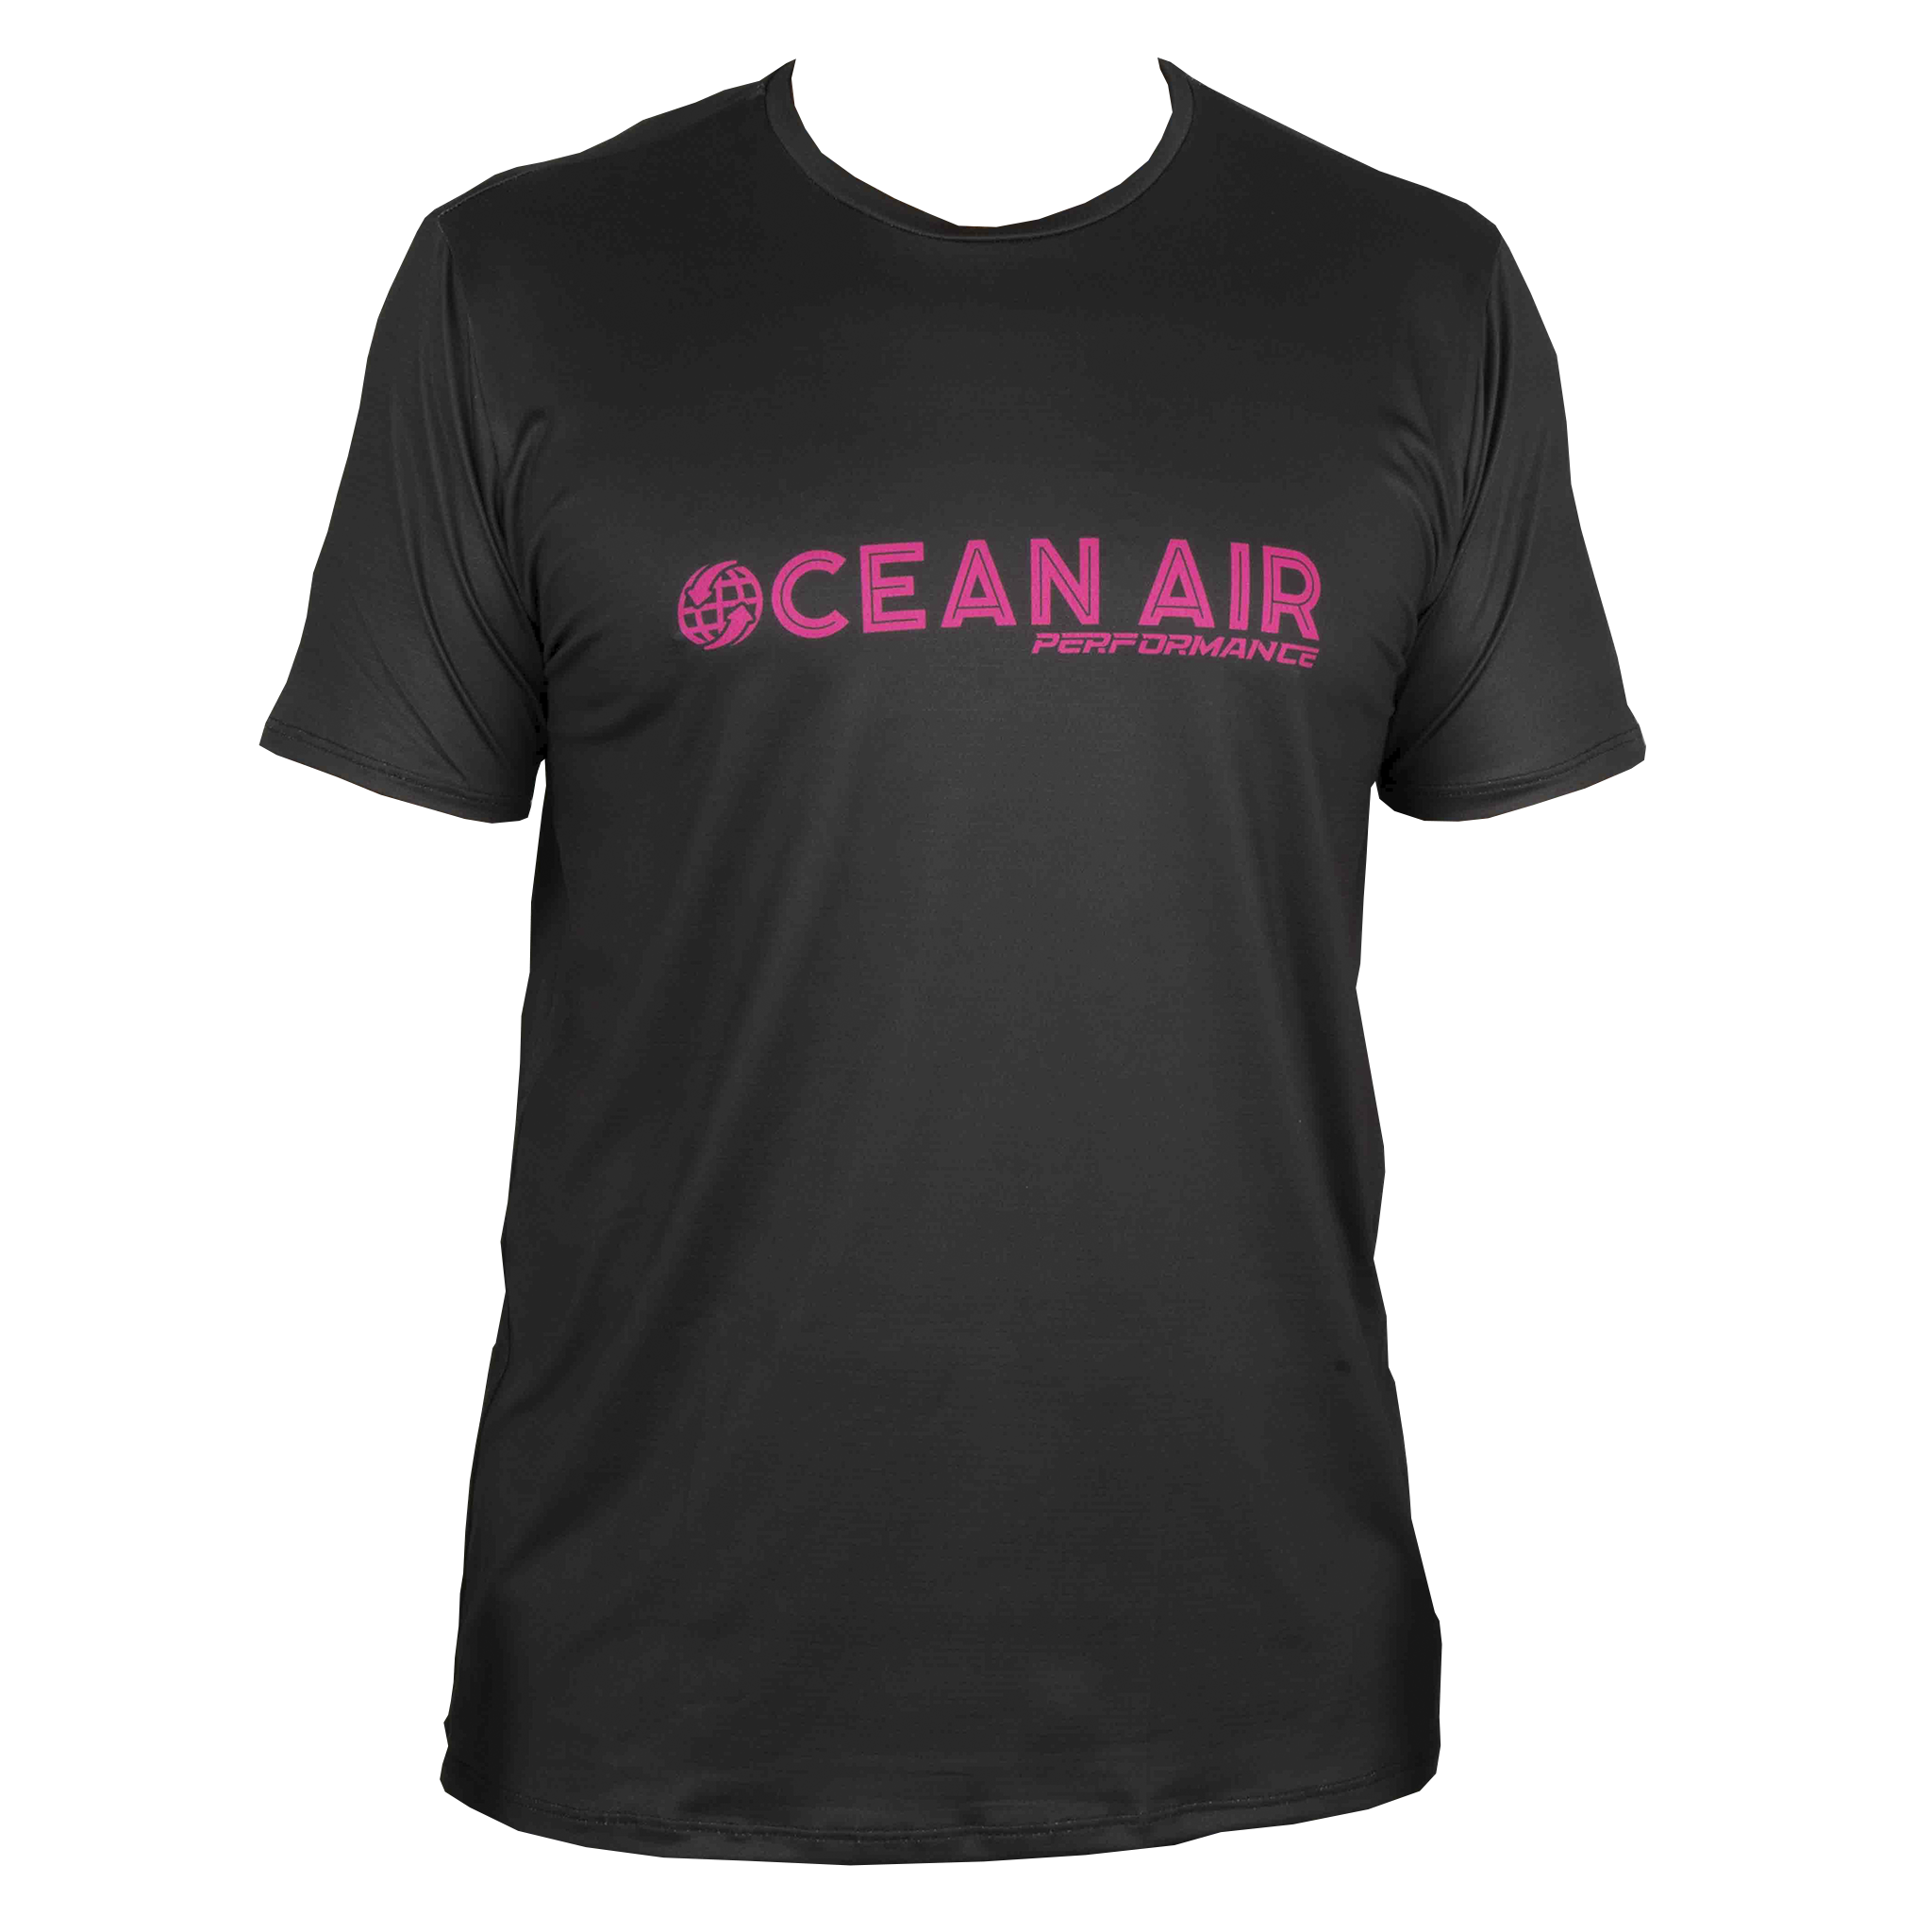 Ocean Air Performance T-Shirt